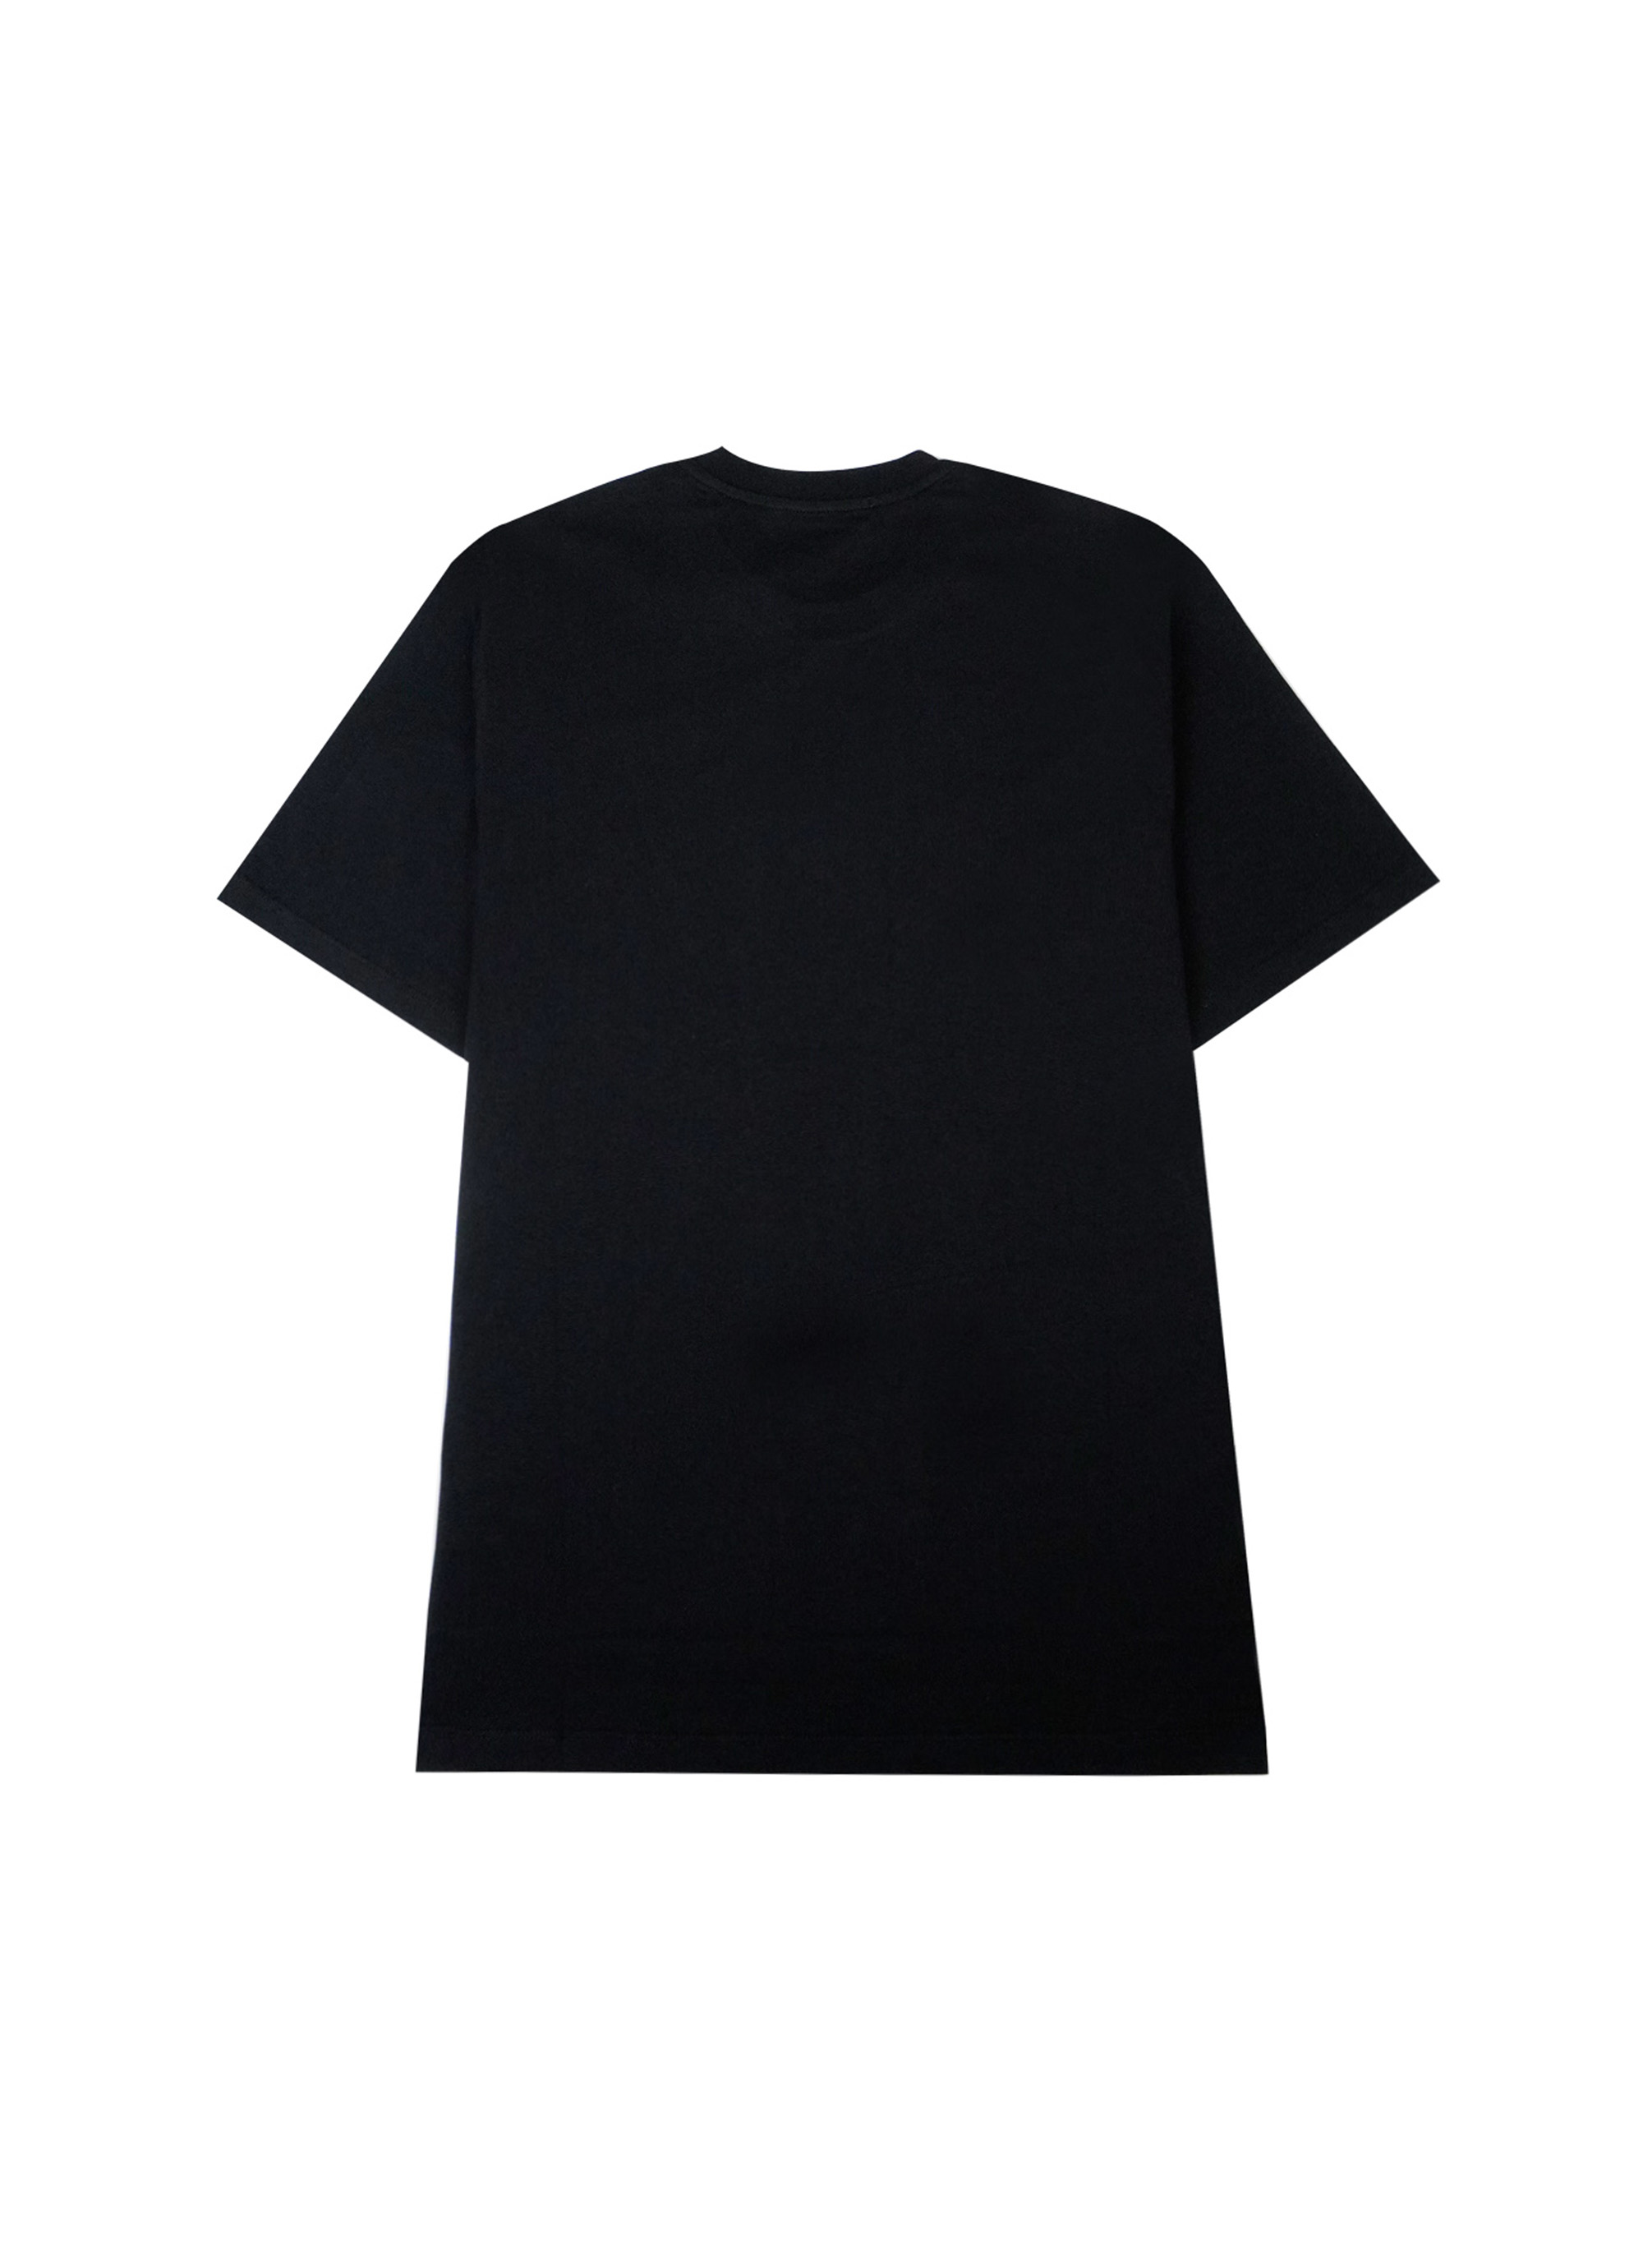 【NEW】ブラッシュロゴTシャツ 詳細画像 ブラック 2